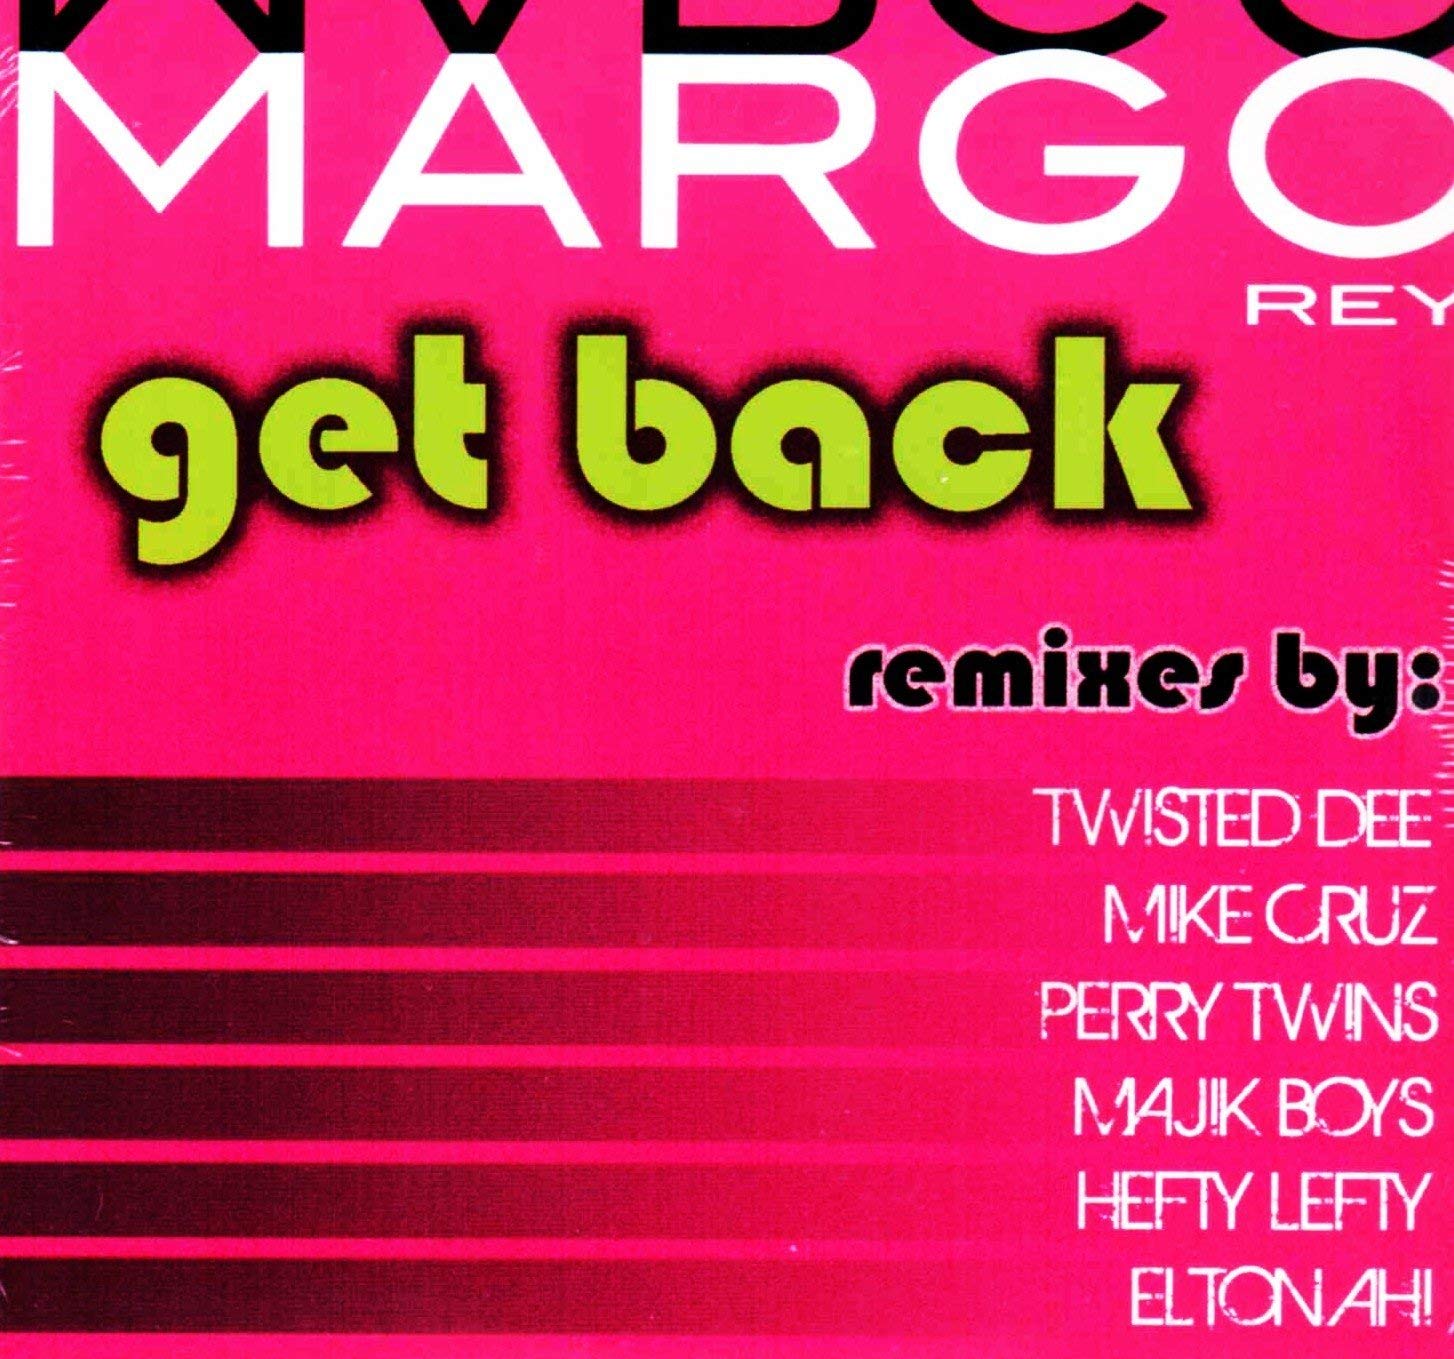 MARGO REY - Get Back cover 